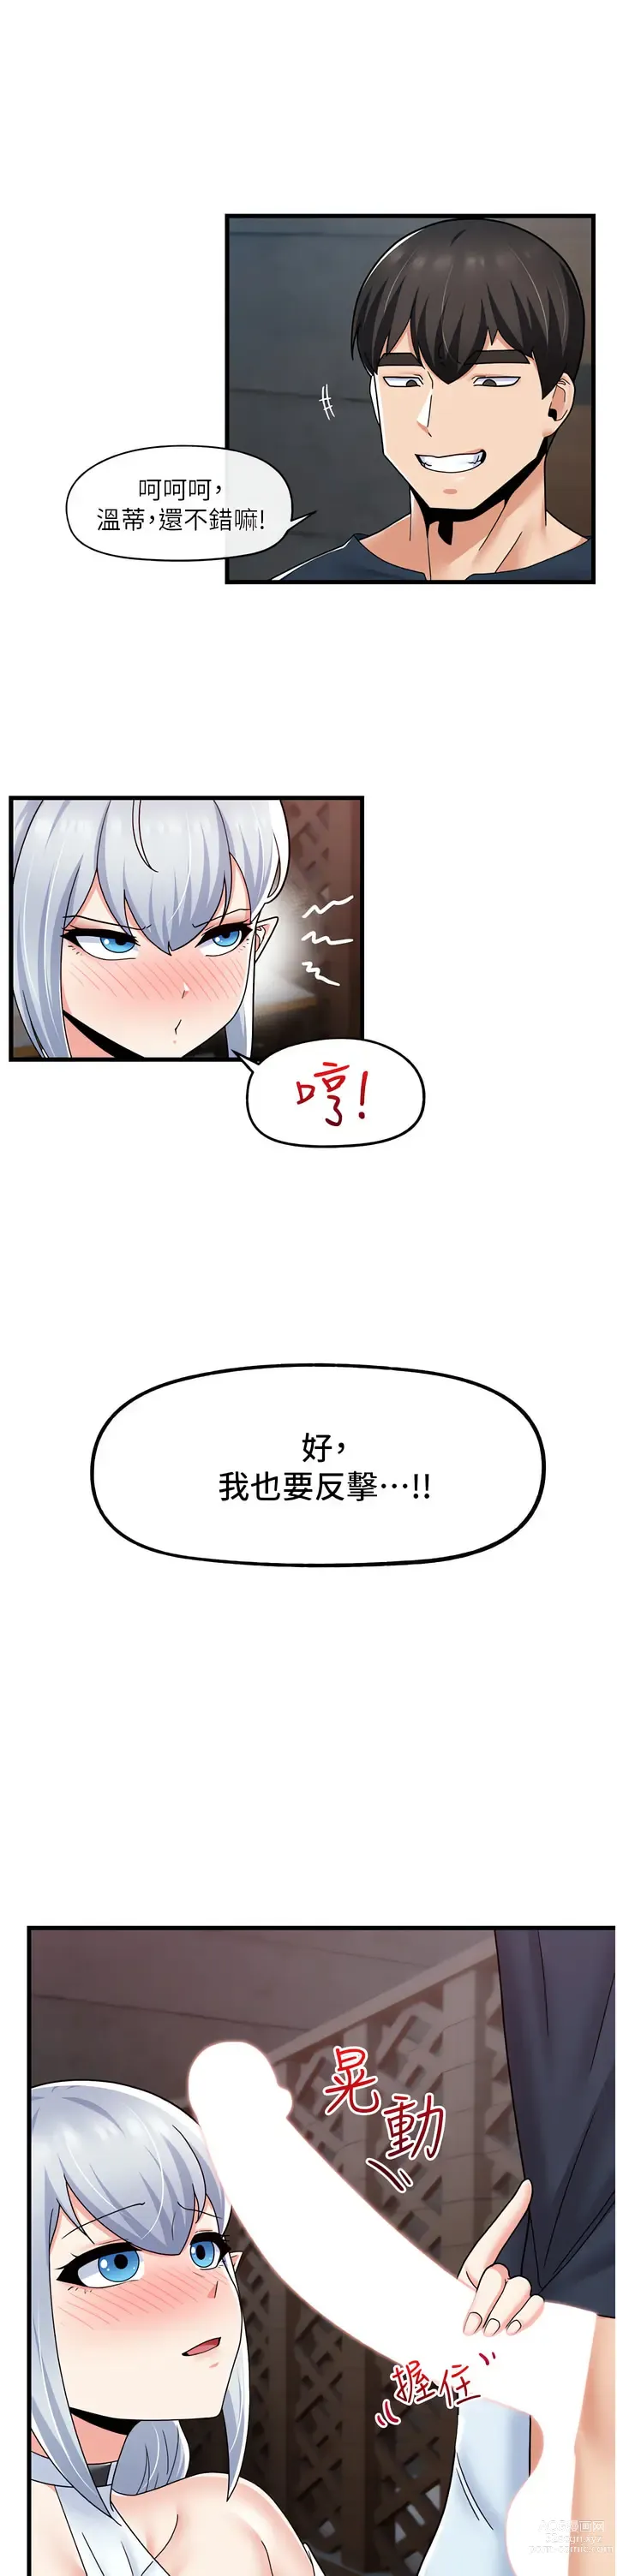 Page 18 of manga 异世界催眠王